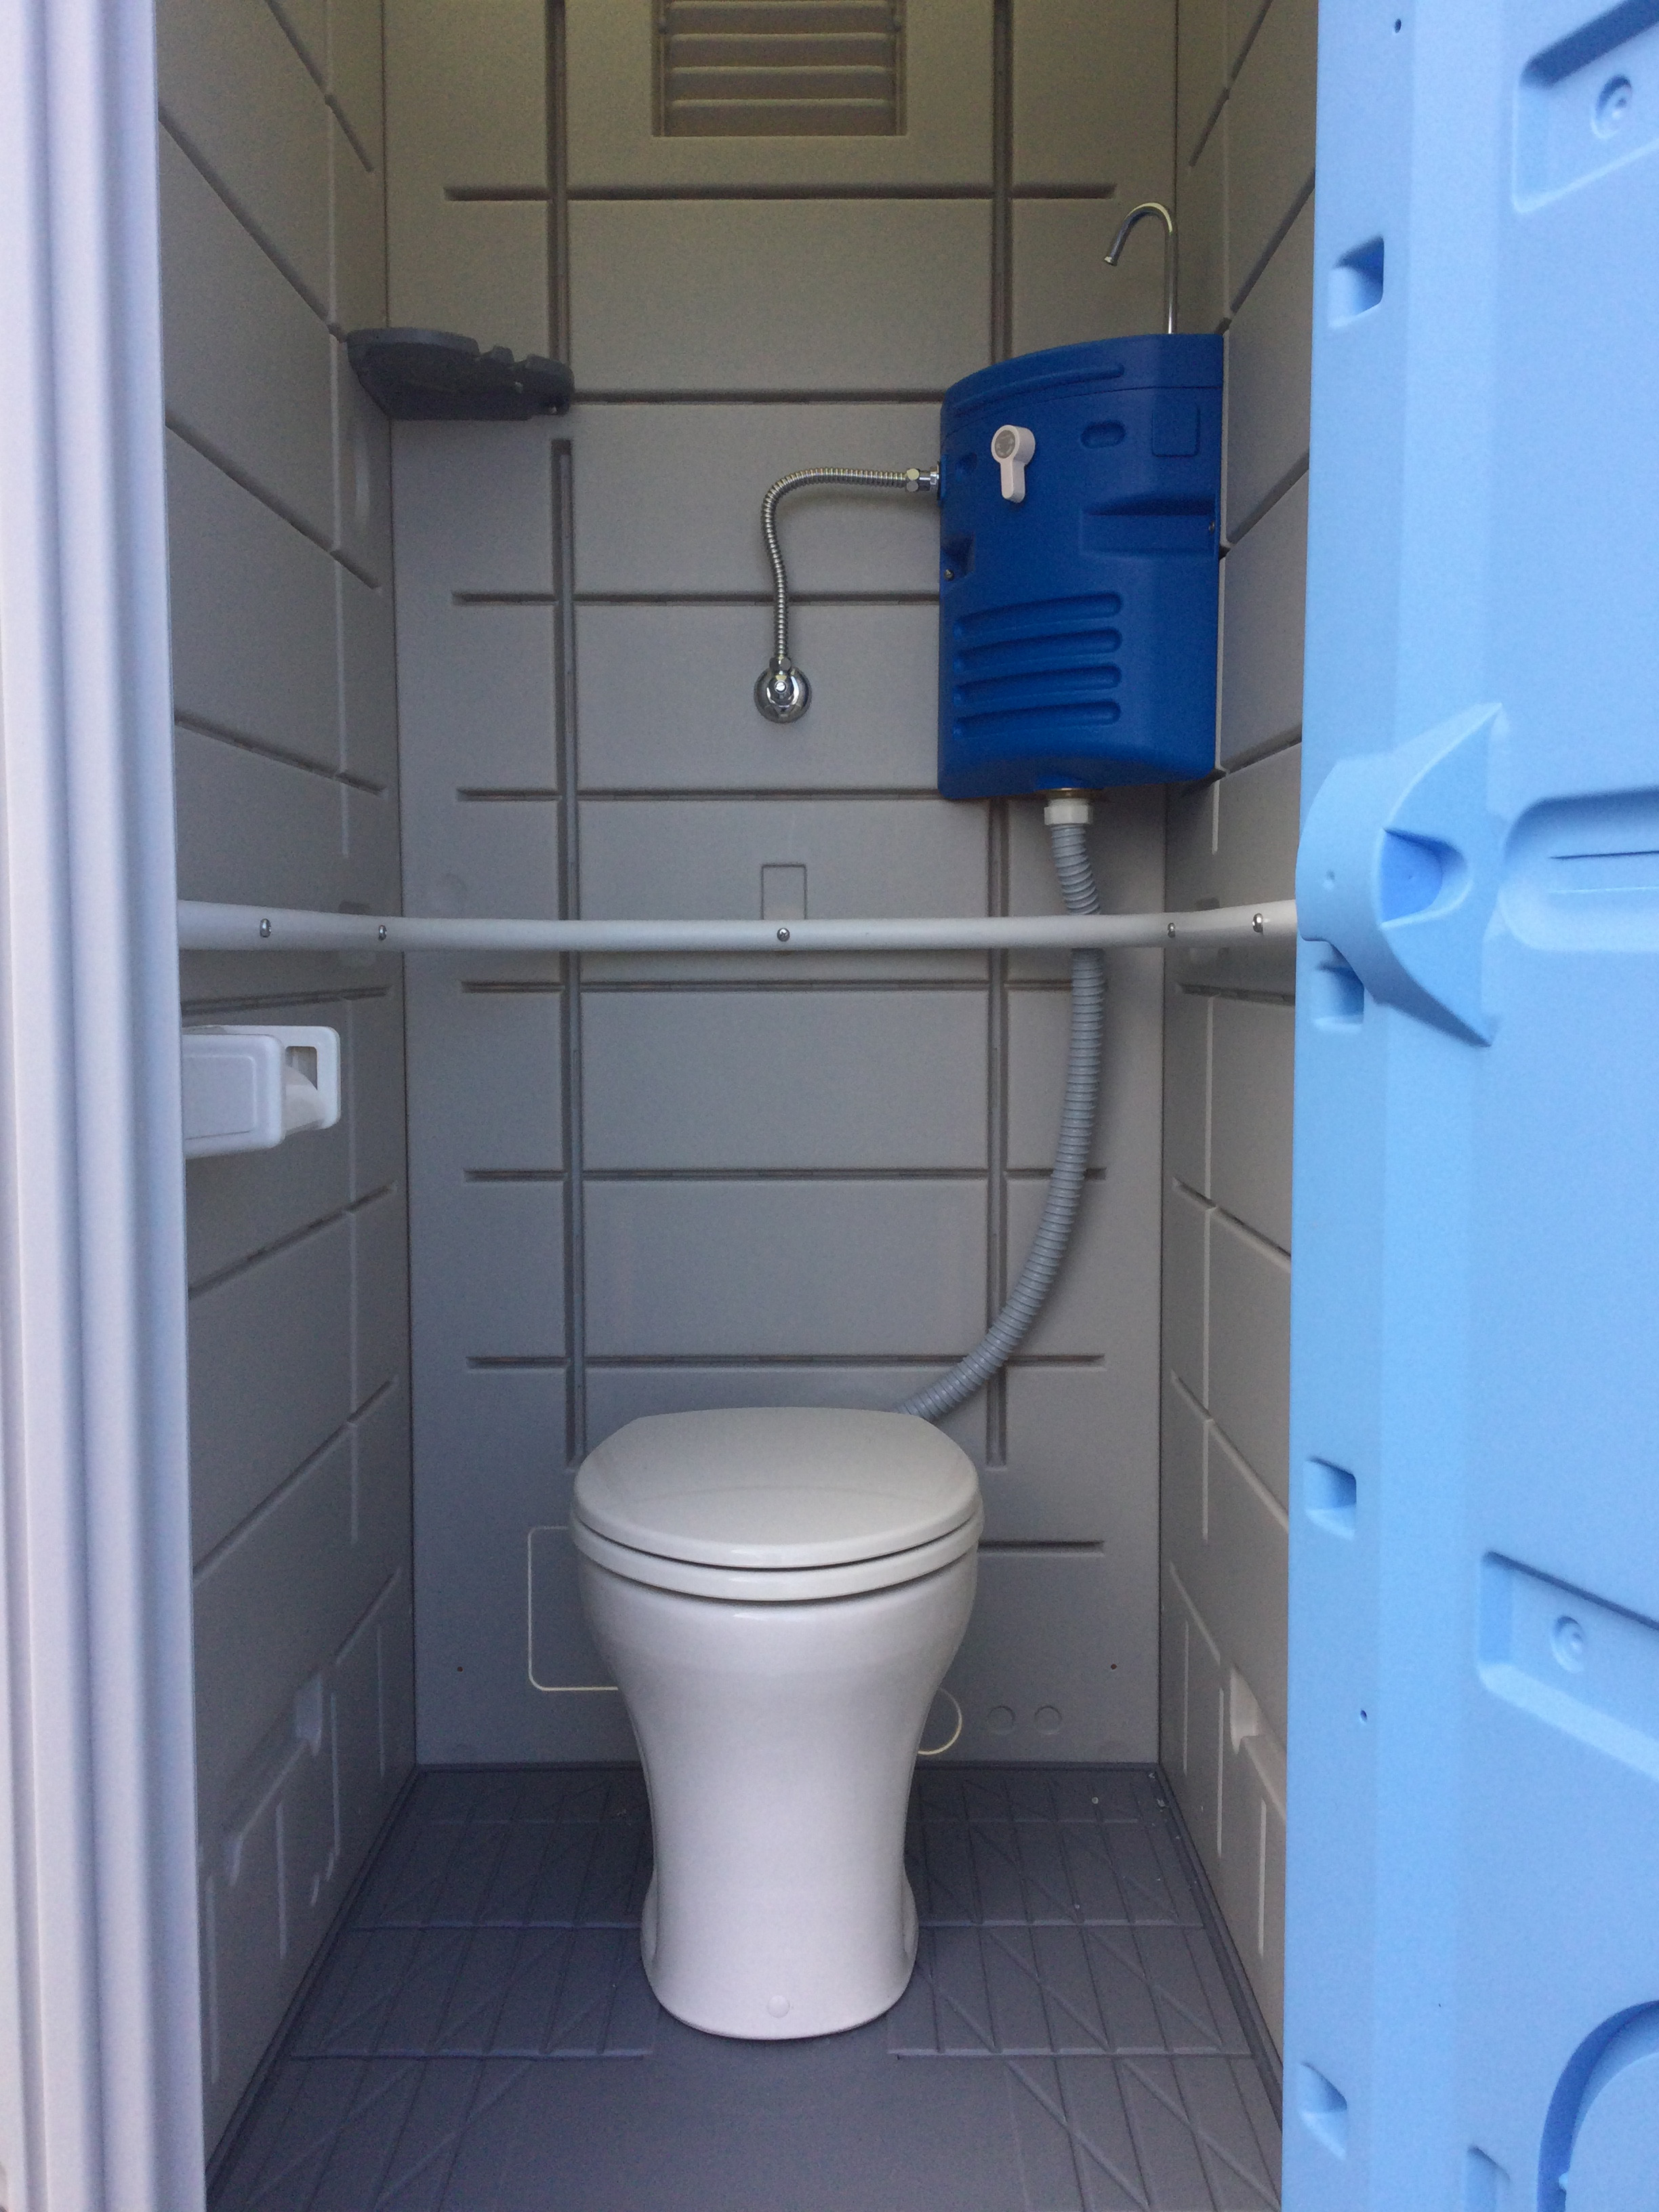 ー品販売 仮設トイレ ハウス コンテナ 建設資材ストア新品 洋式簡易水洗トイレ 陶器便器 ポンプ式 給排水工事不要